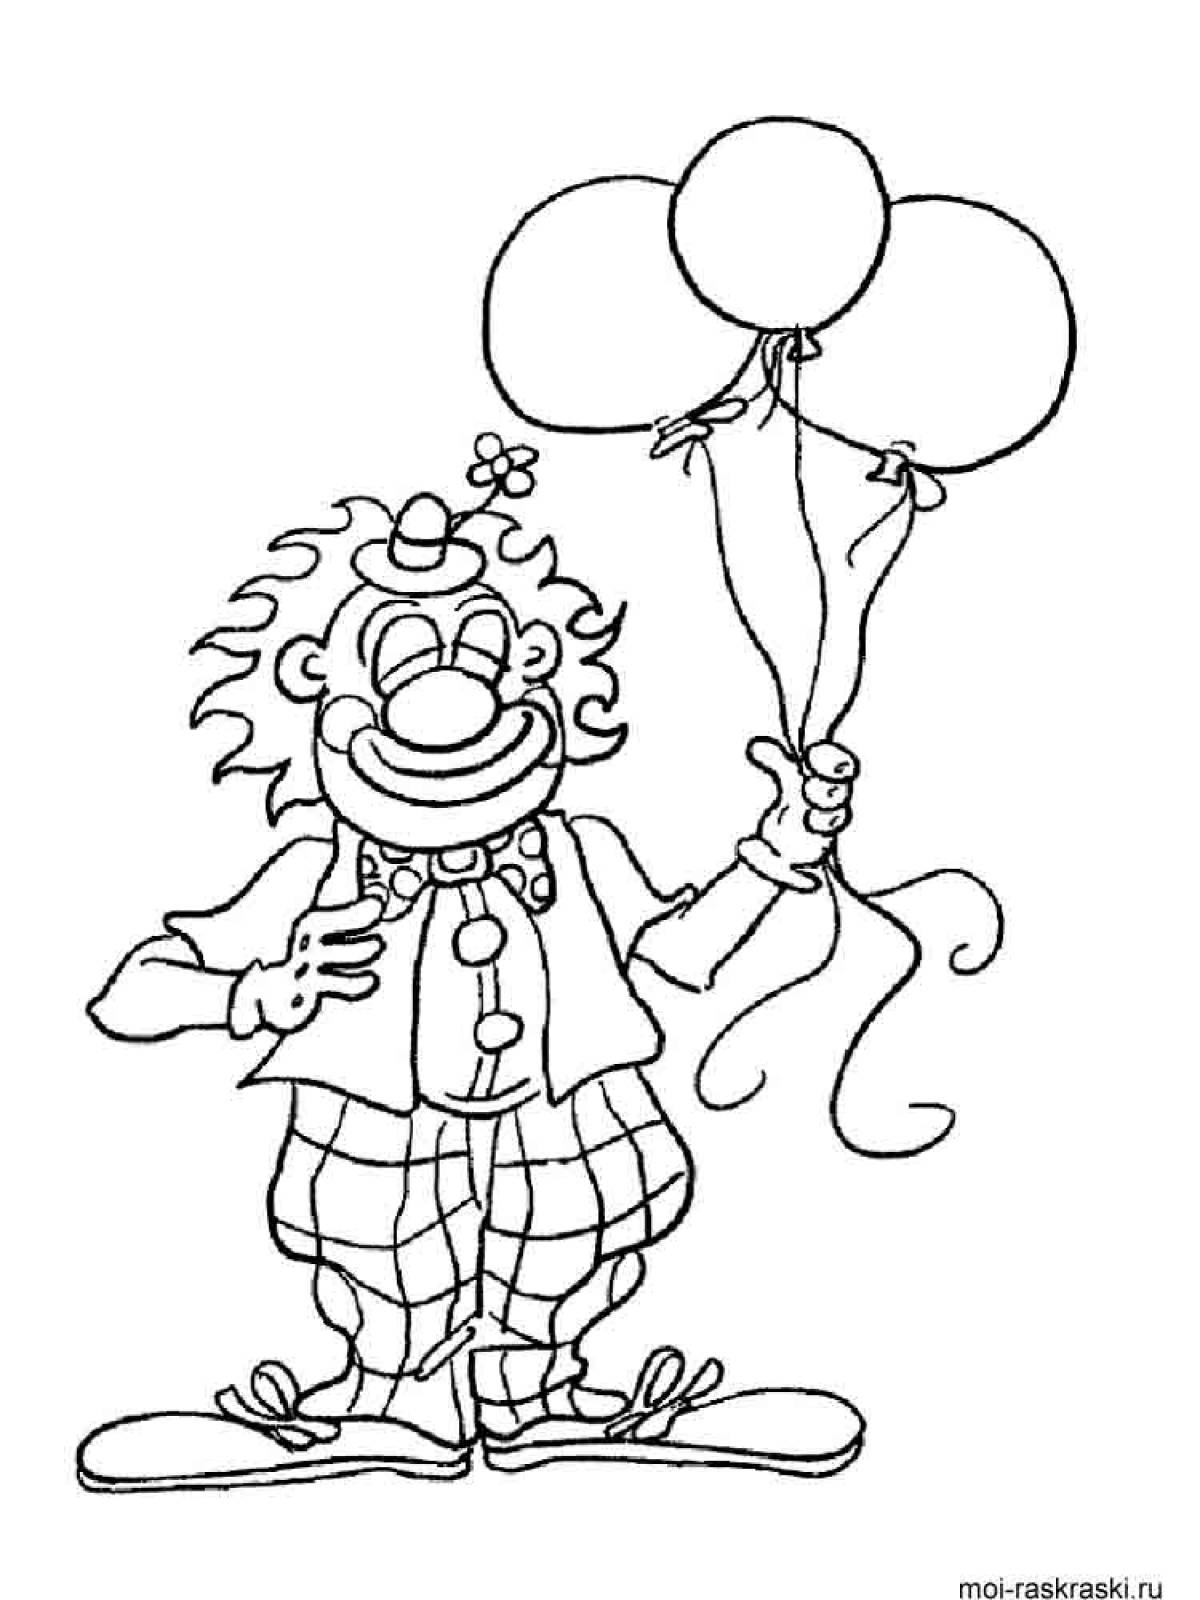 Раскраски 1 апреля день смеха для детей. Раскраска клоун с шарами. Клоун раскраска для детей. Клоун картинка для детей раскраска. Клоун для раскрашивания детям.